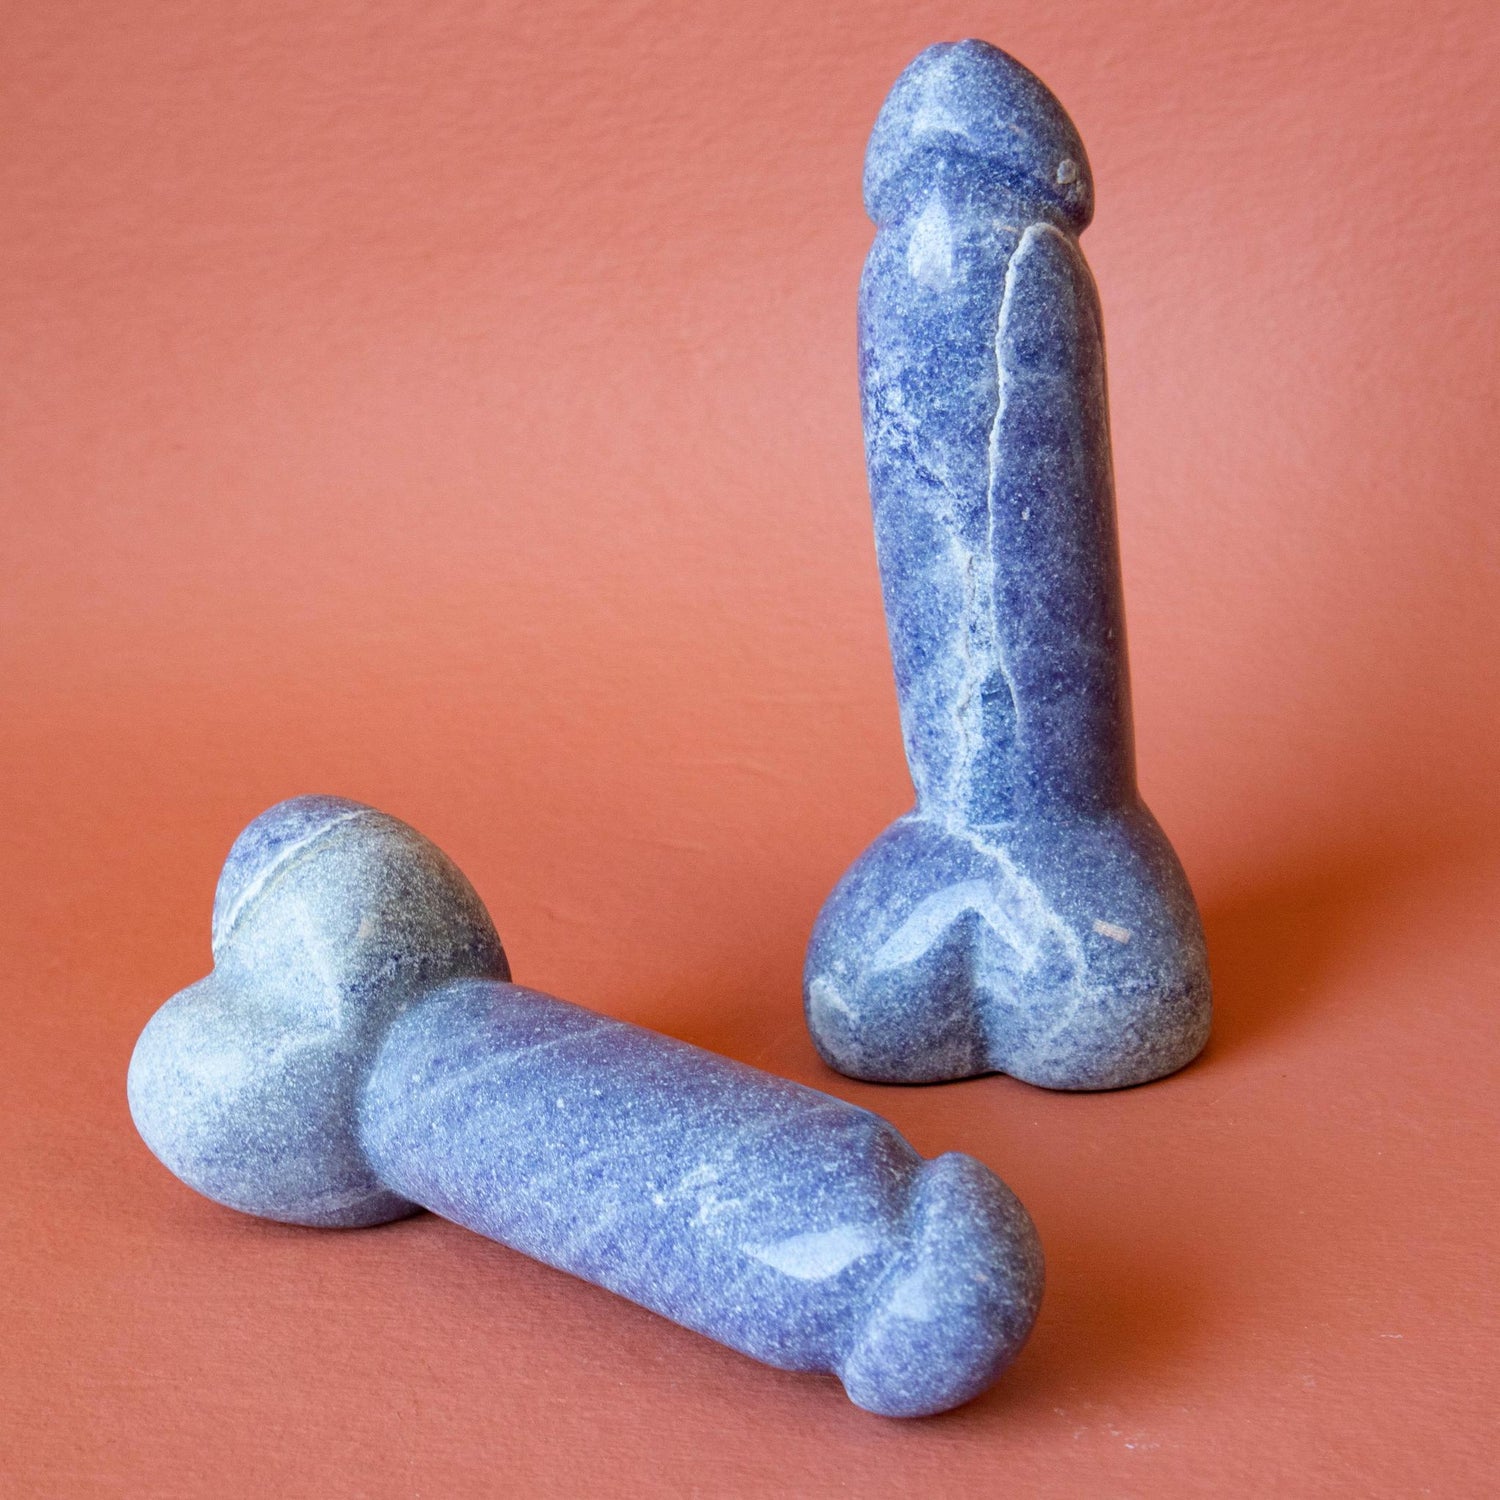 blue quartz phallus, blue quartz penis, blue quartz phallus carving, blue quartz penis carving, blue quartz carving, blue quartz metaphysical properties, blue quartz healing properties, blue quartz metaphysical properties, blue quartz spiritual meaning, blue quartz meaning